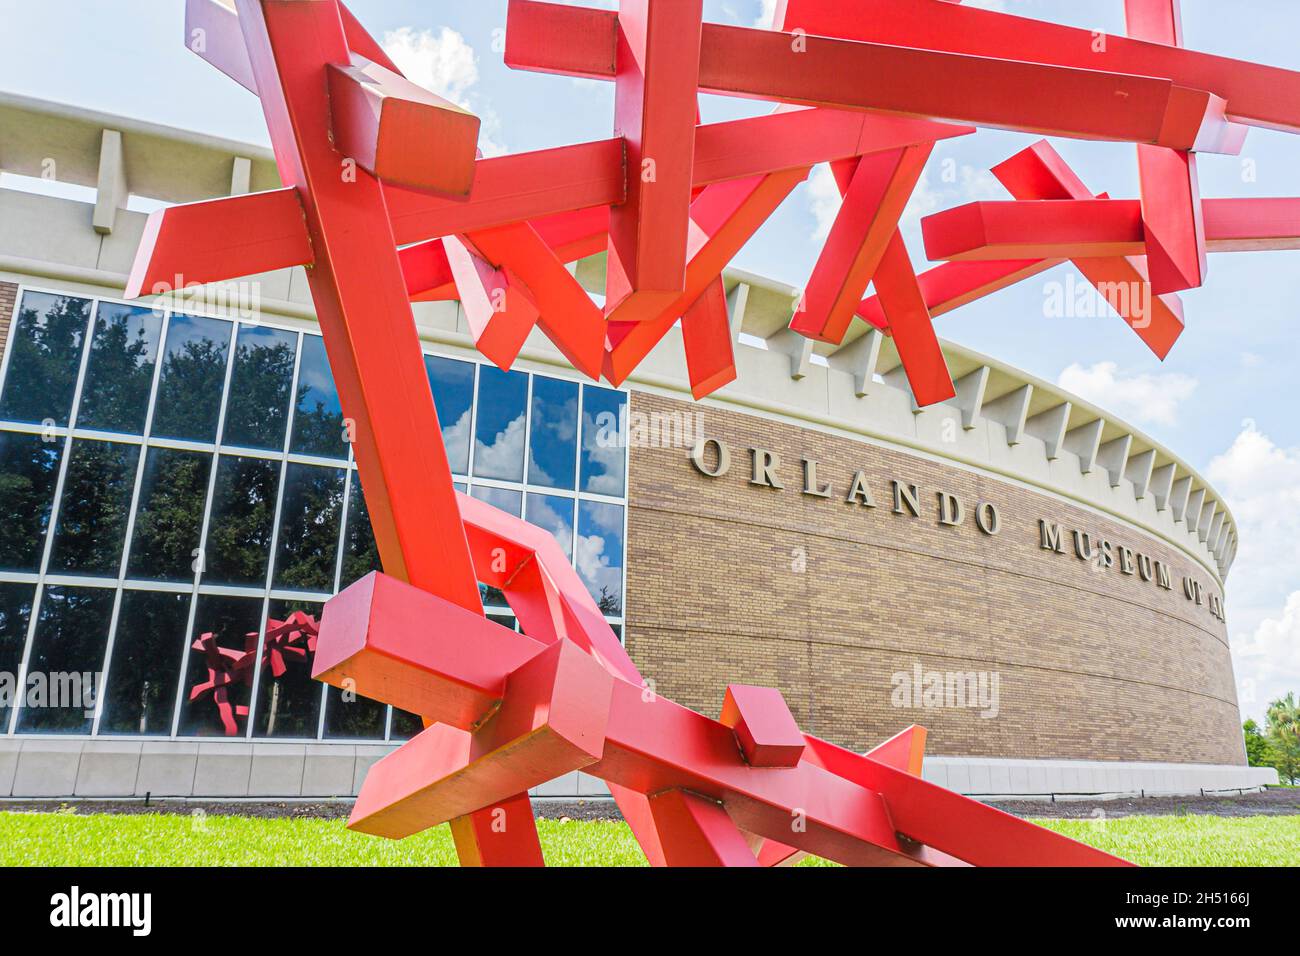 Orlando Florida, Kunstmuseum vor dem äußeren Vordereingang, Metallskulpturen Skulpturen rote Kunstwerke Gebäude, Loch Haven Park Stockfoto